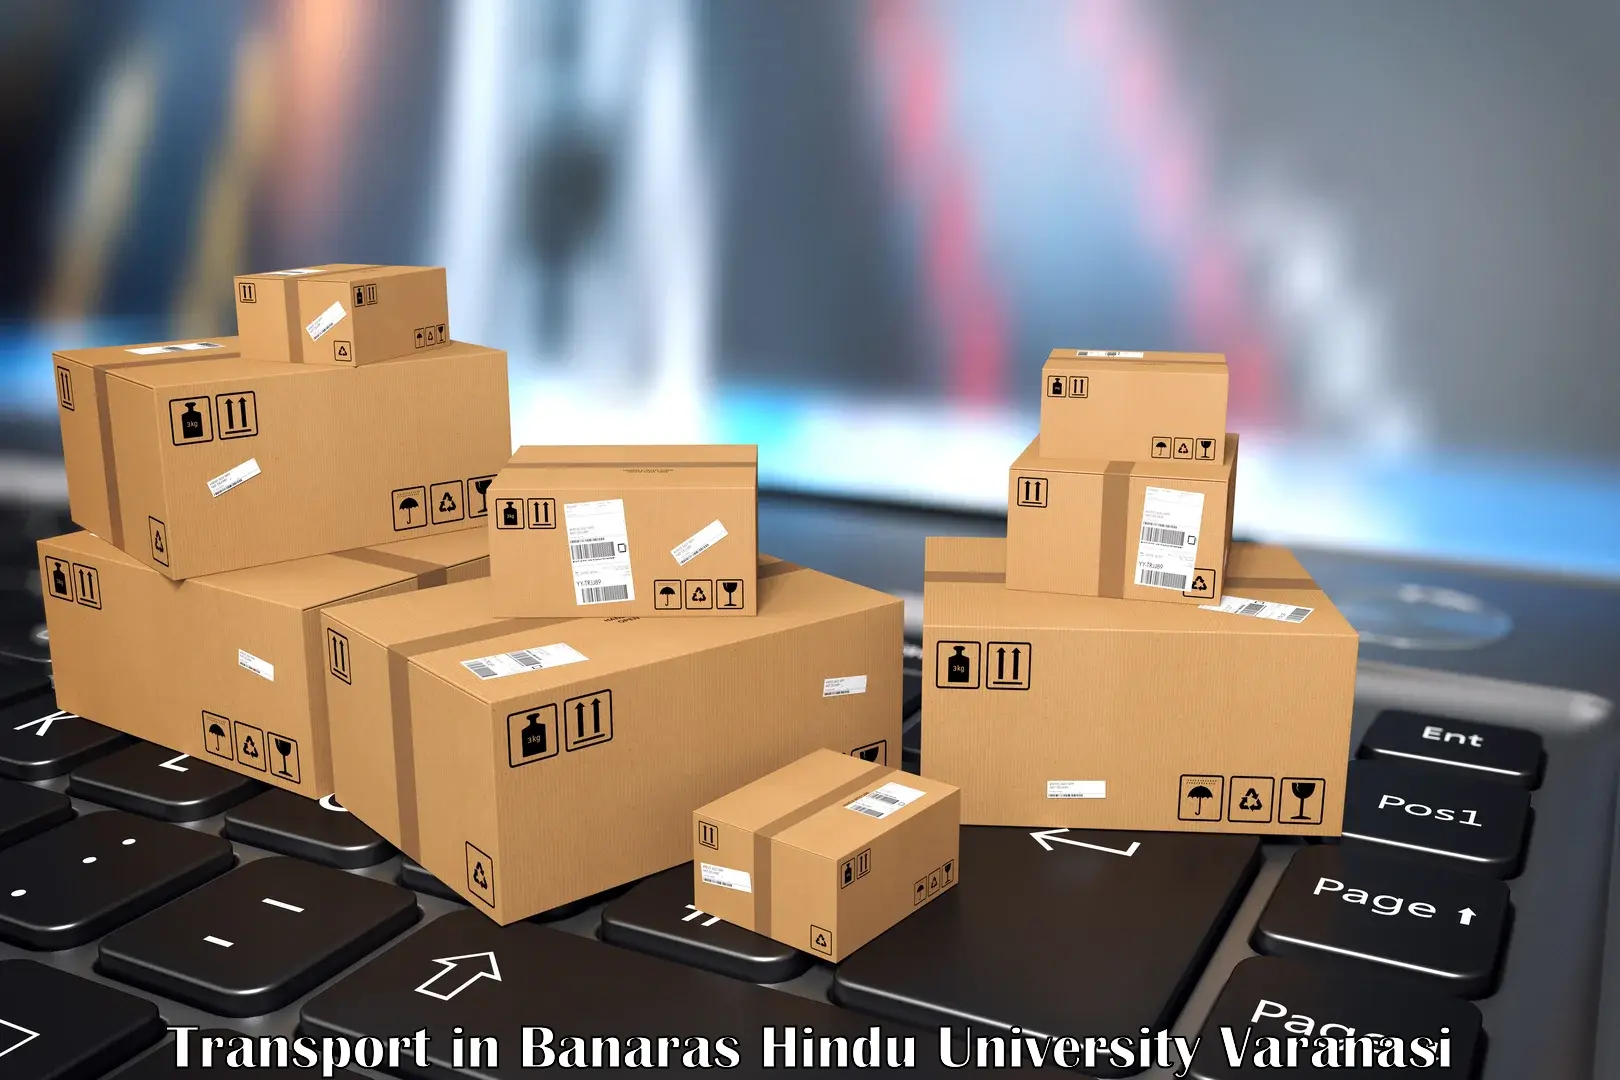 Transportation solution services in Banaras Hindu University Varanasi